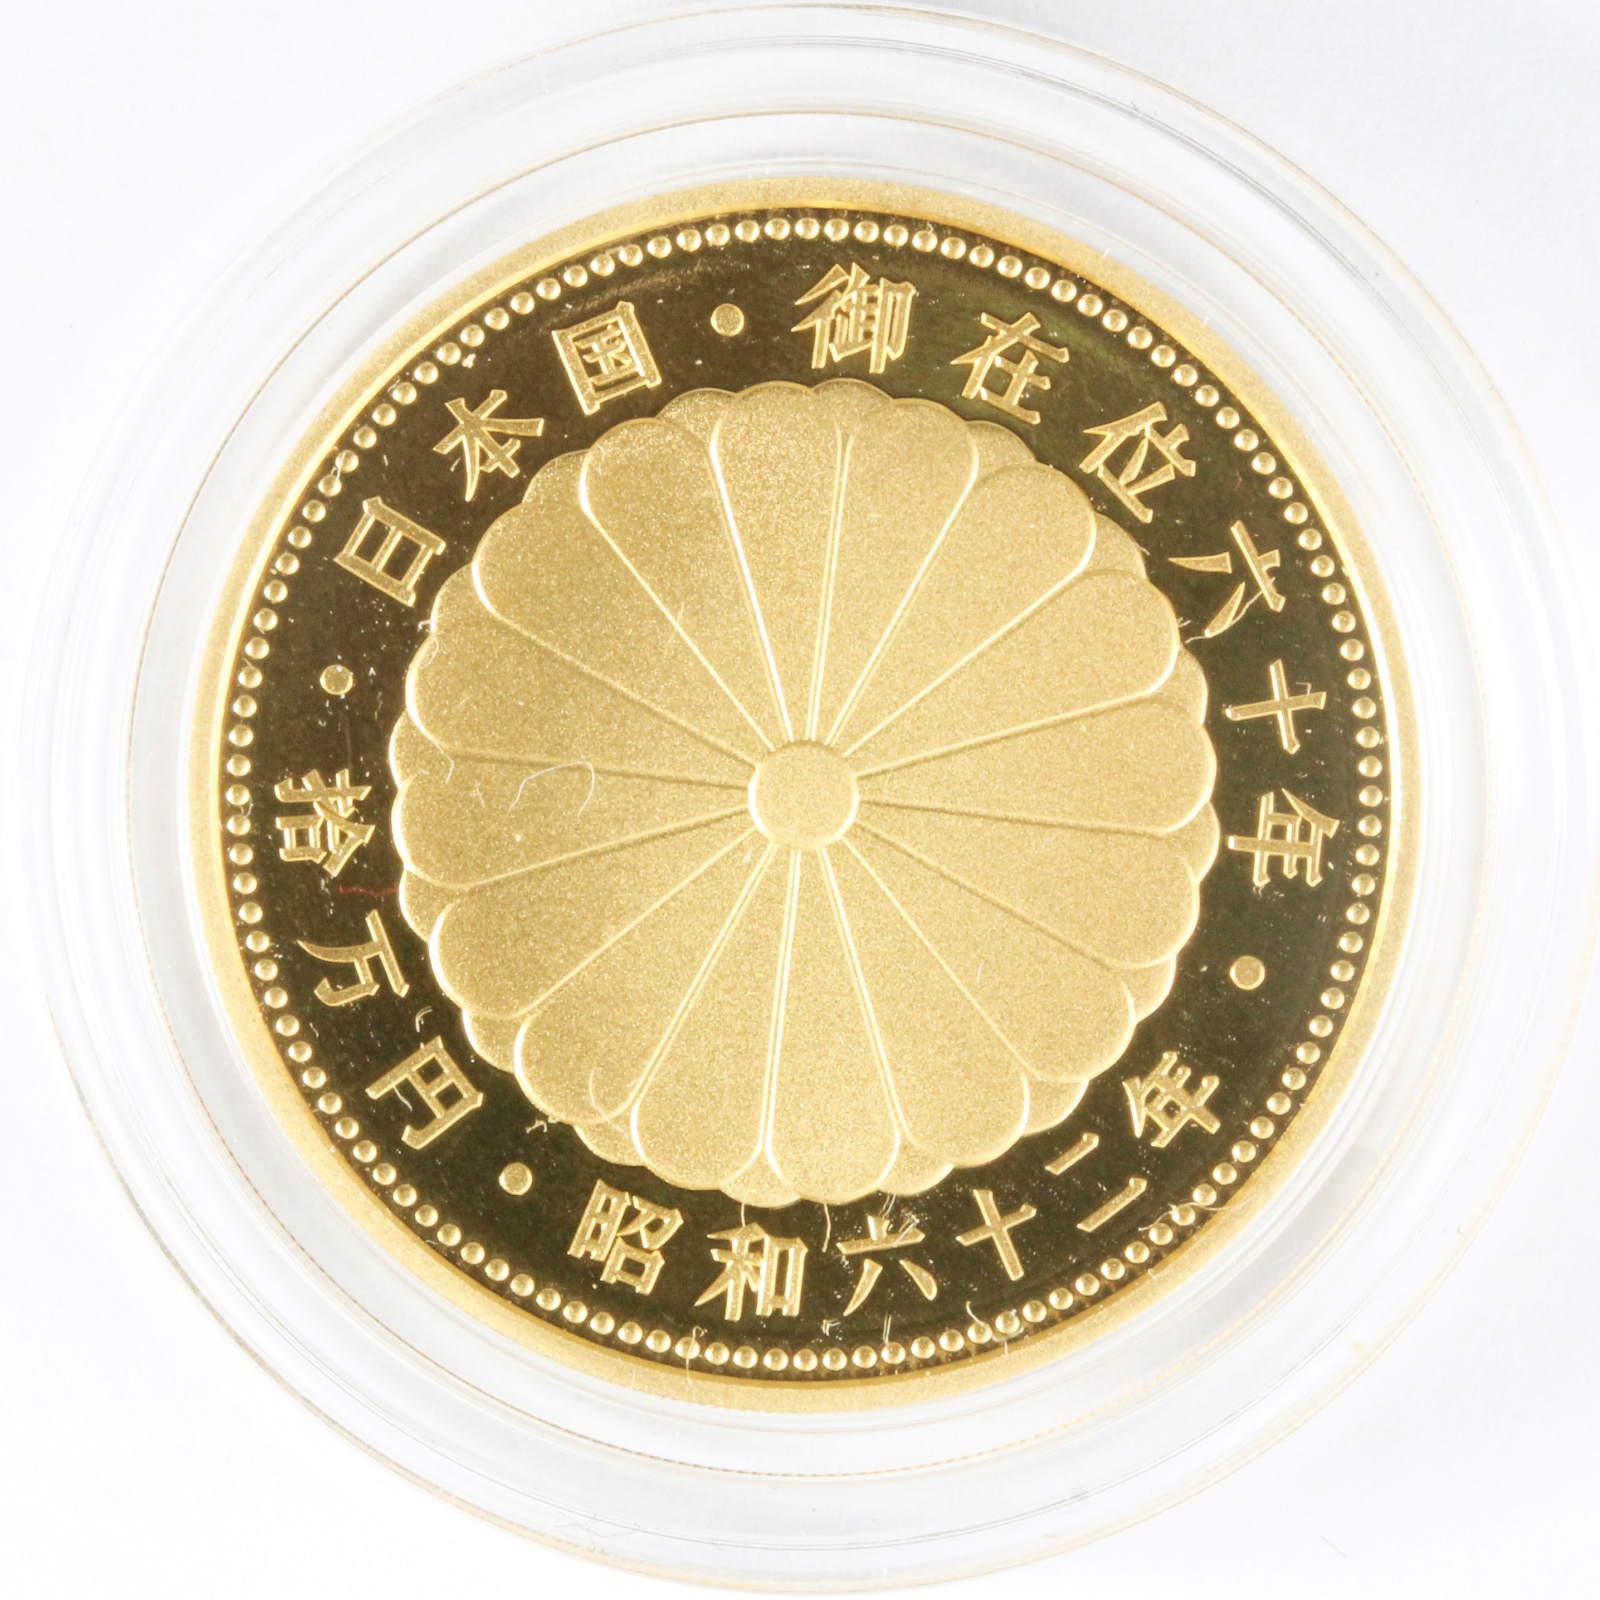 天皇陛下御在位60年記念 プルーフ硬貨 10万円金貨 - nimfomane.com